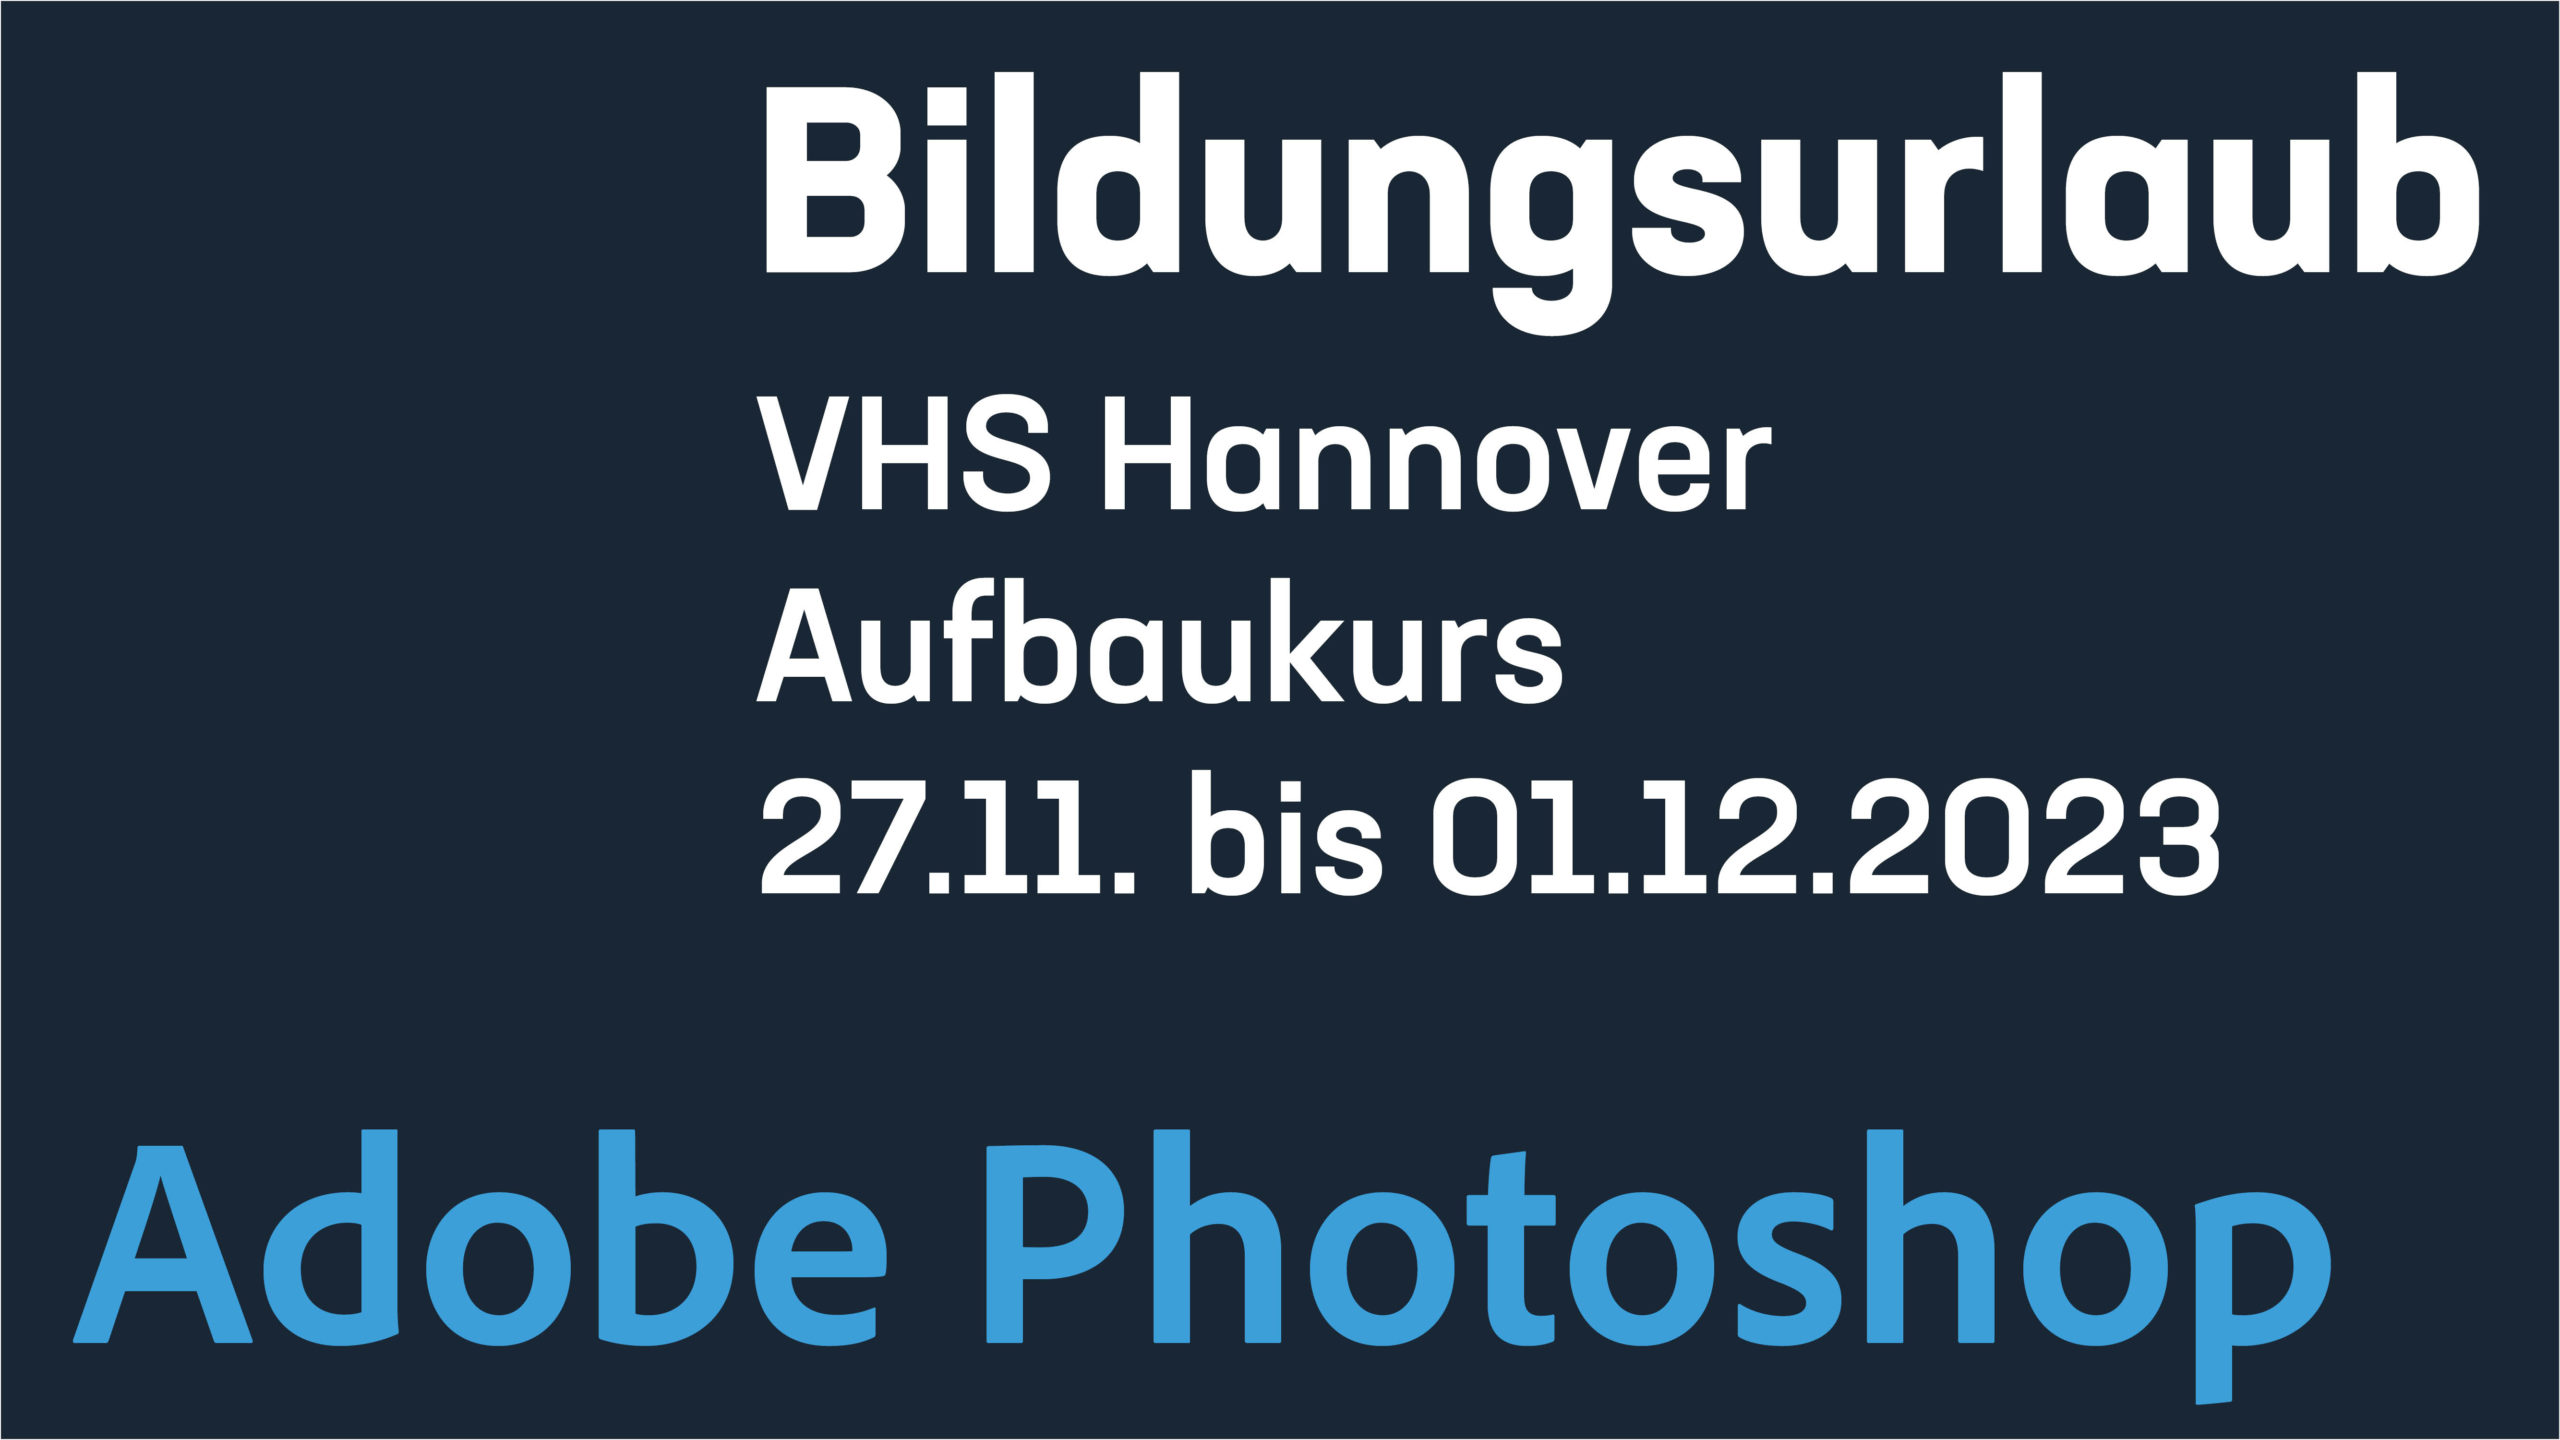 Adobe Photoshop Bildungsurlaub – Aufbaukurs VHS Hannover